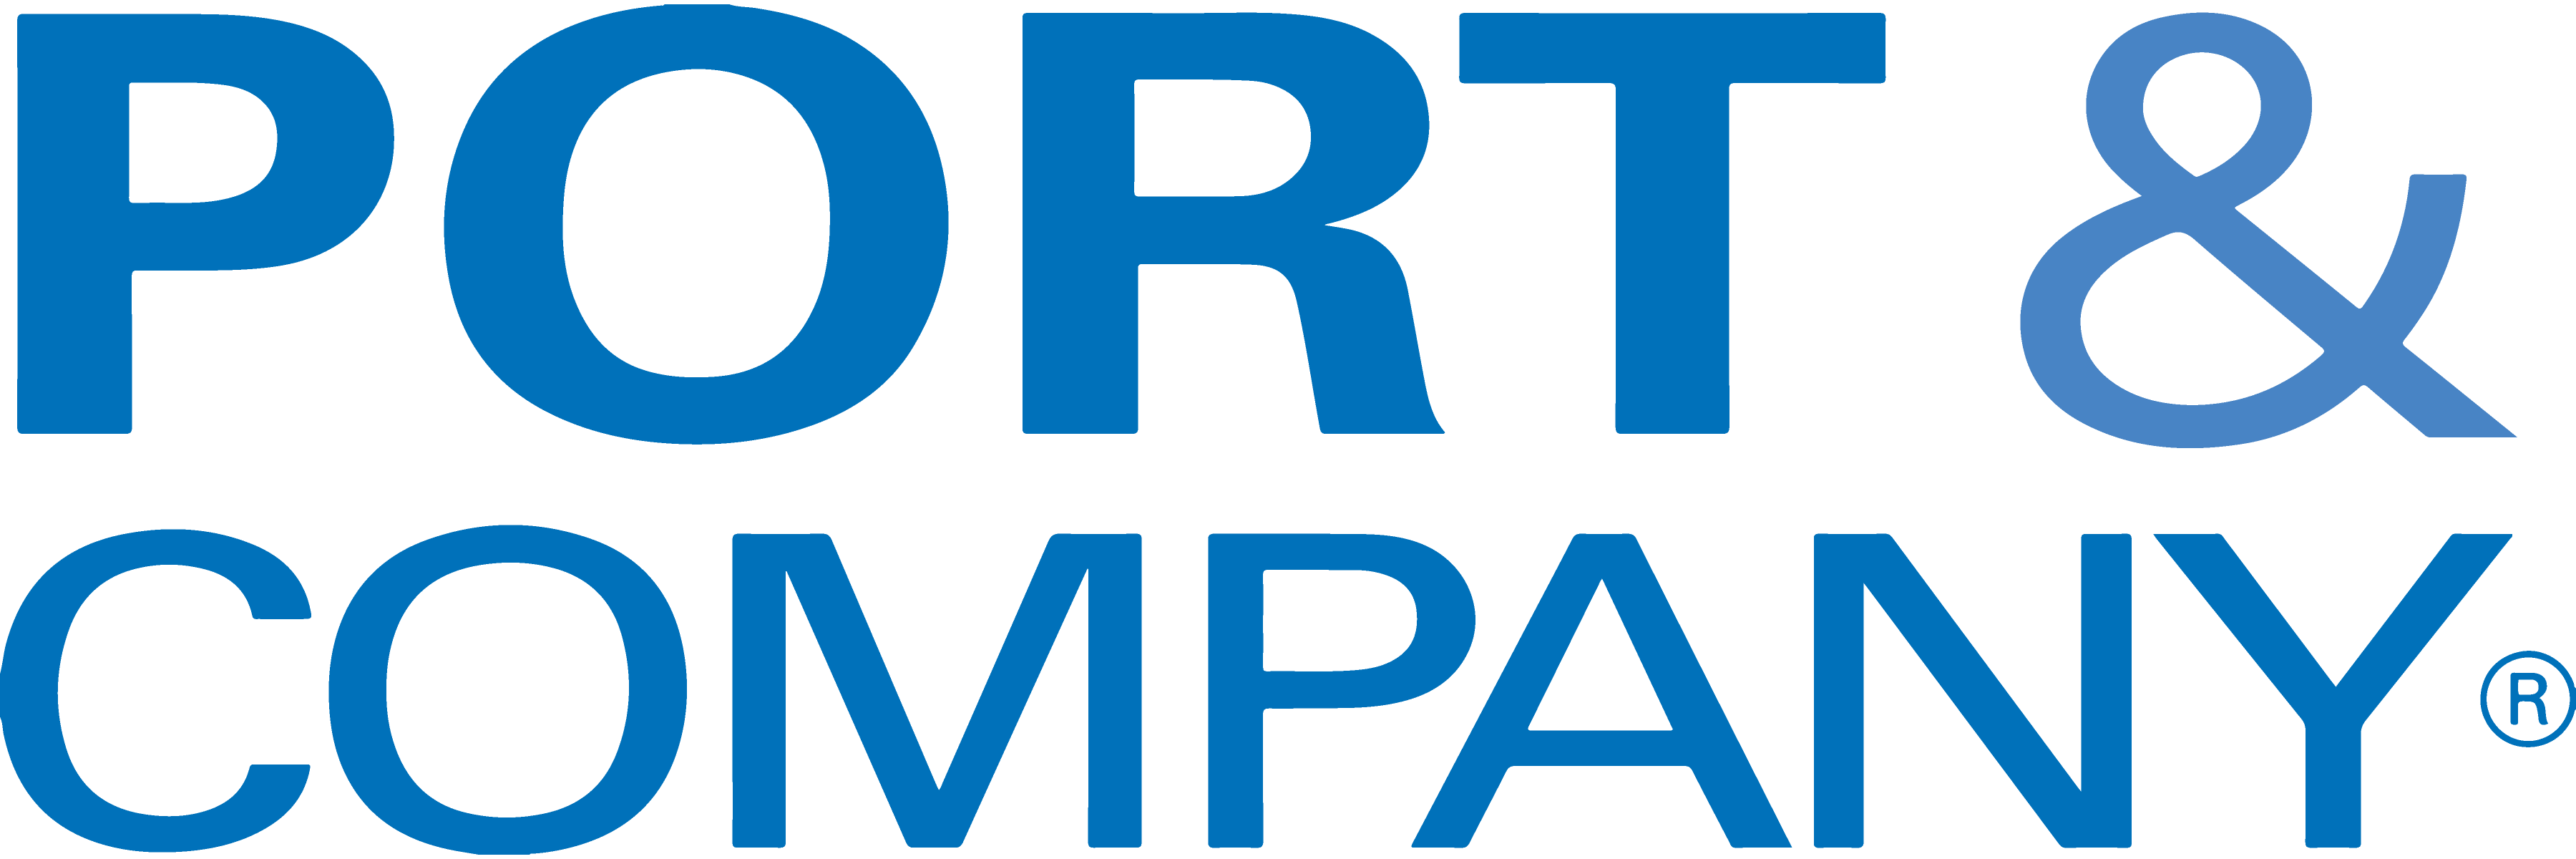 Port&Co_logo